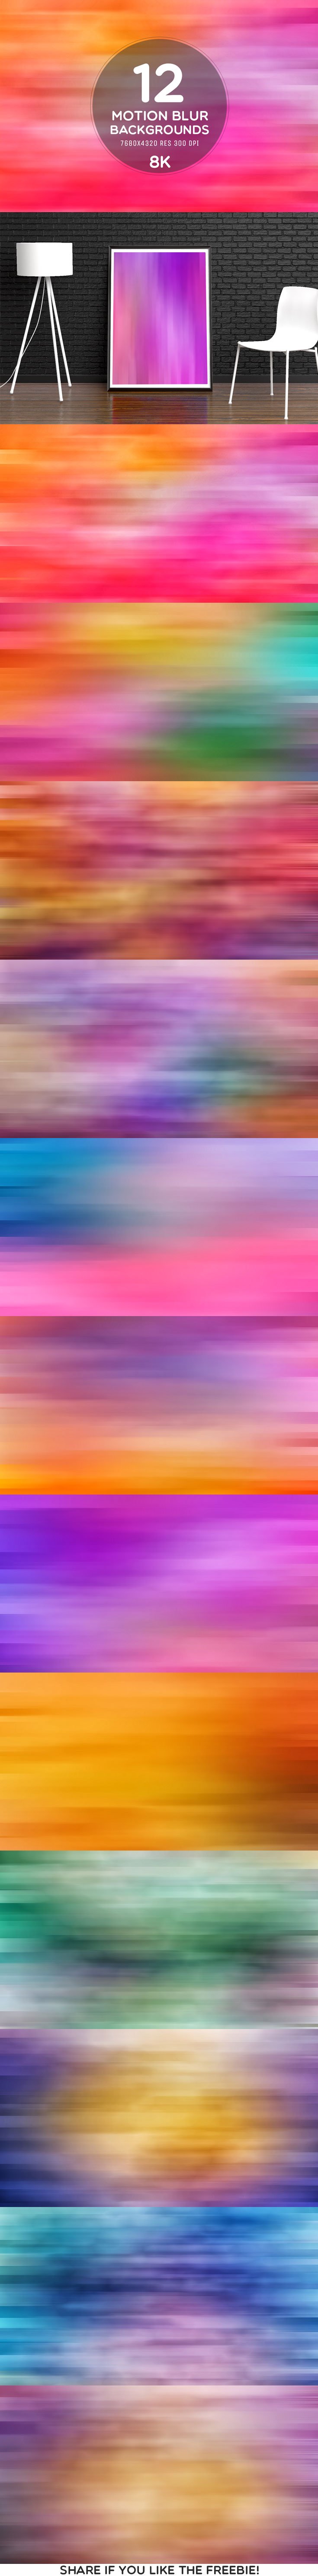 12 Free Motion Blur 8K Backgrounds For Website Or App